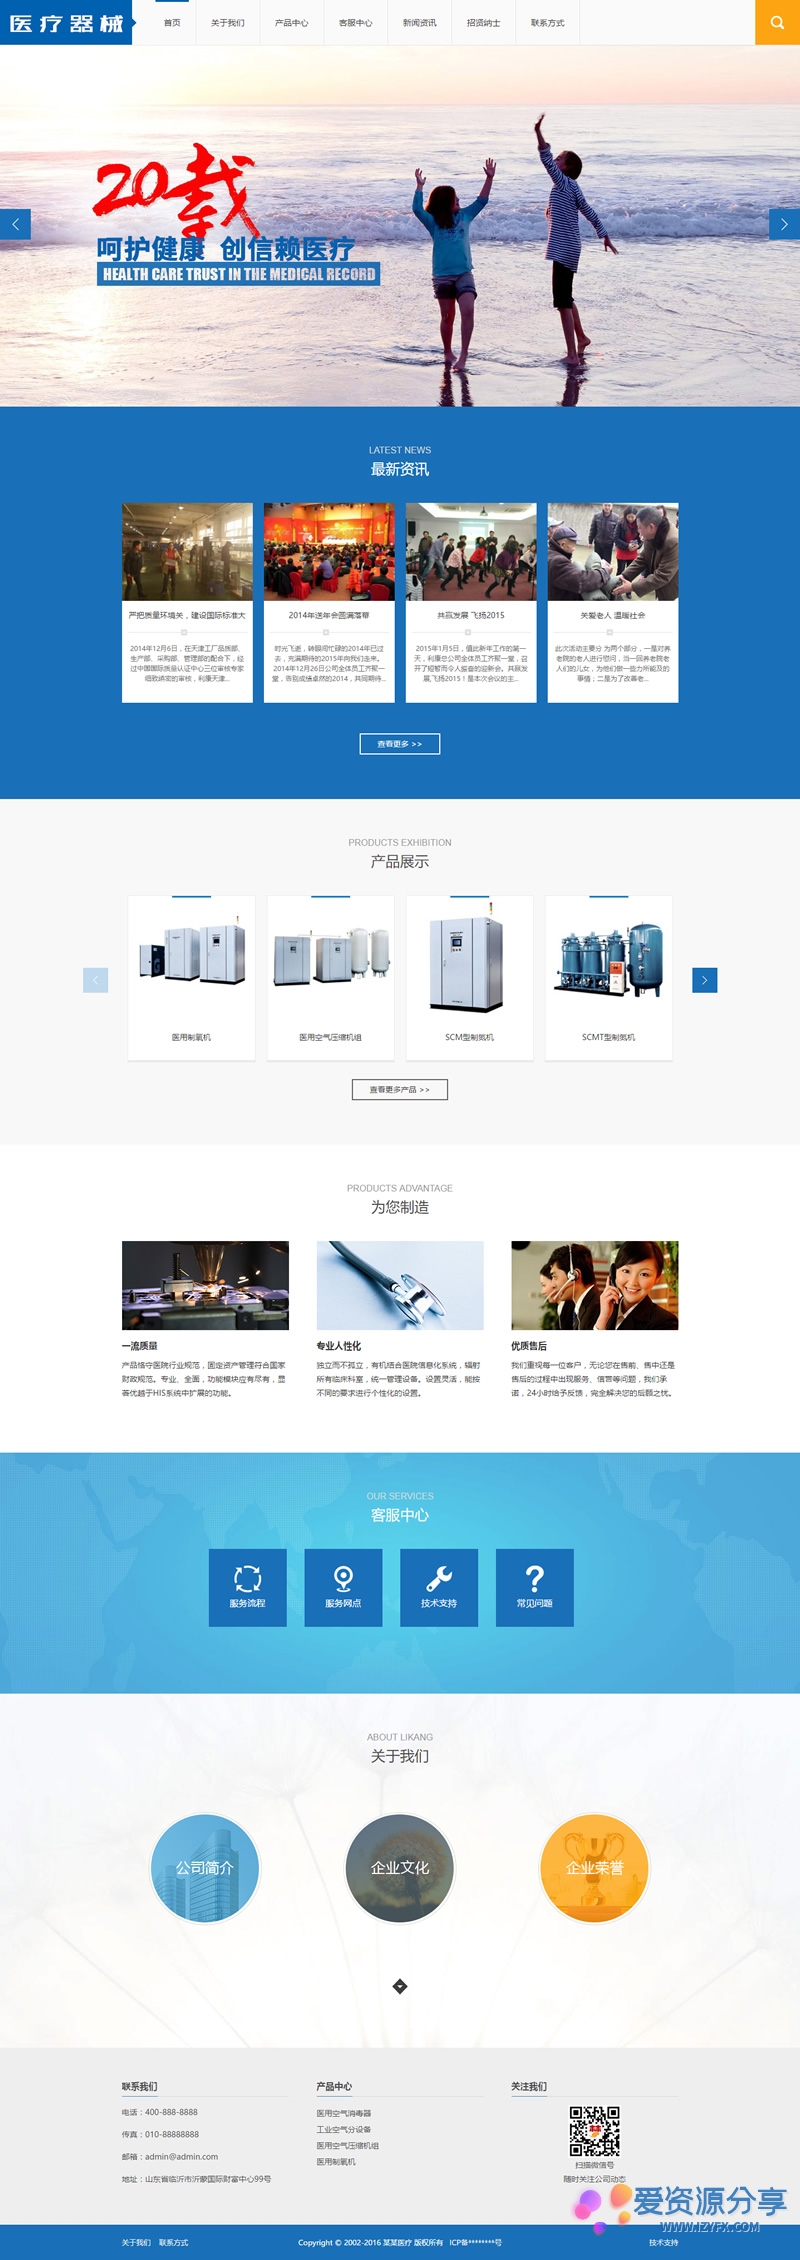 【dedecms】蓝色大气美化UI医疗器械设备生产企业织梦网站模板-爱资源分享